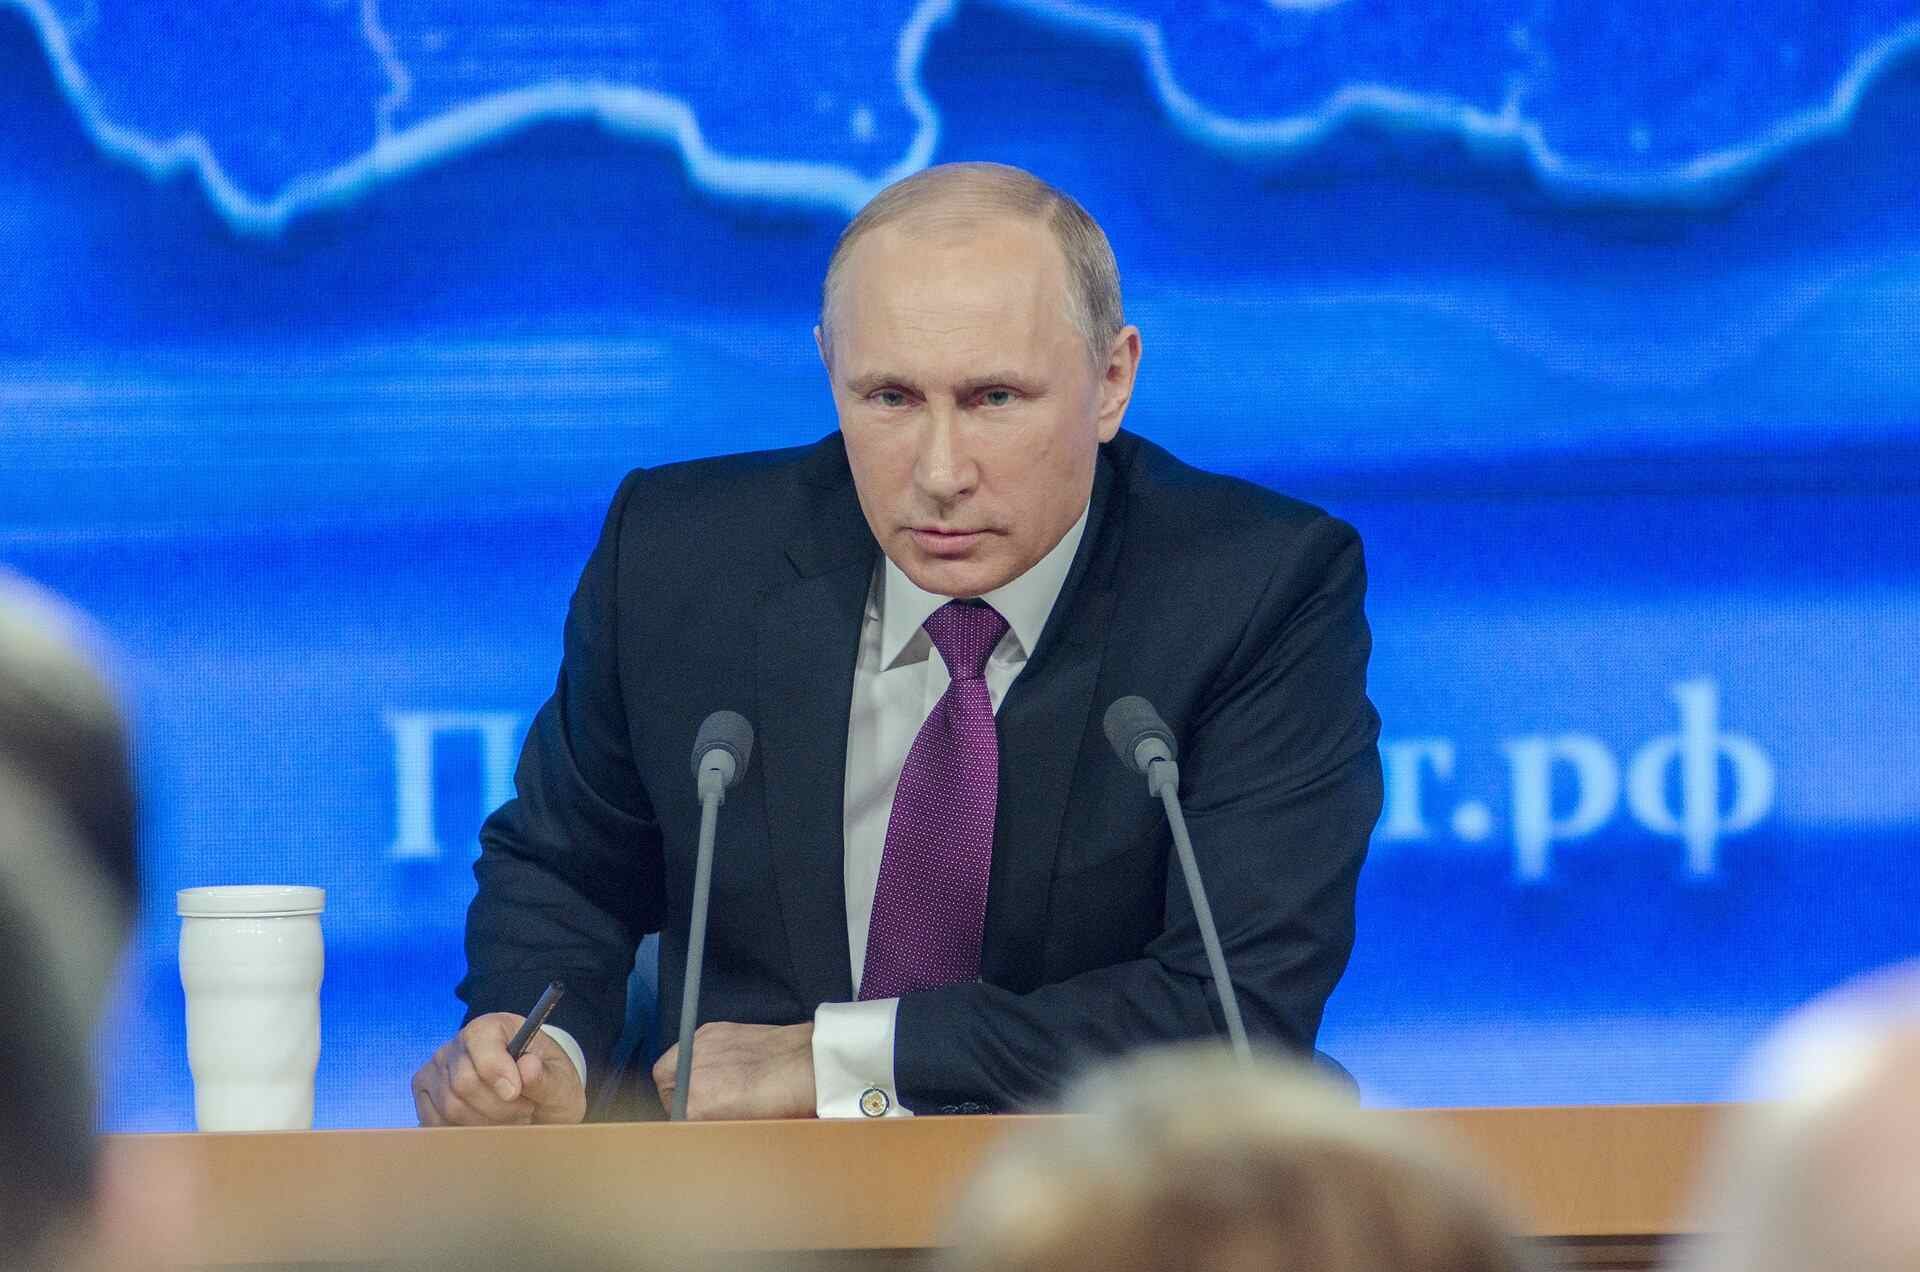 МК: президент России Владимир Путин устроил США худший момент в истории ядерной сенсацией